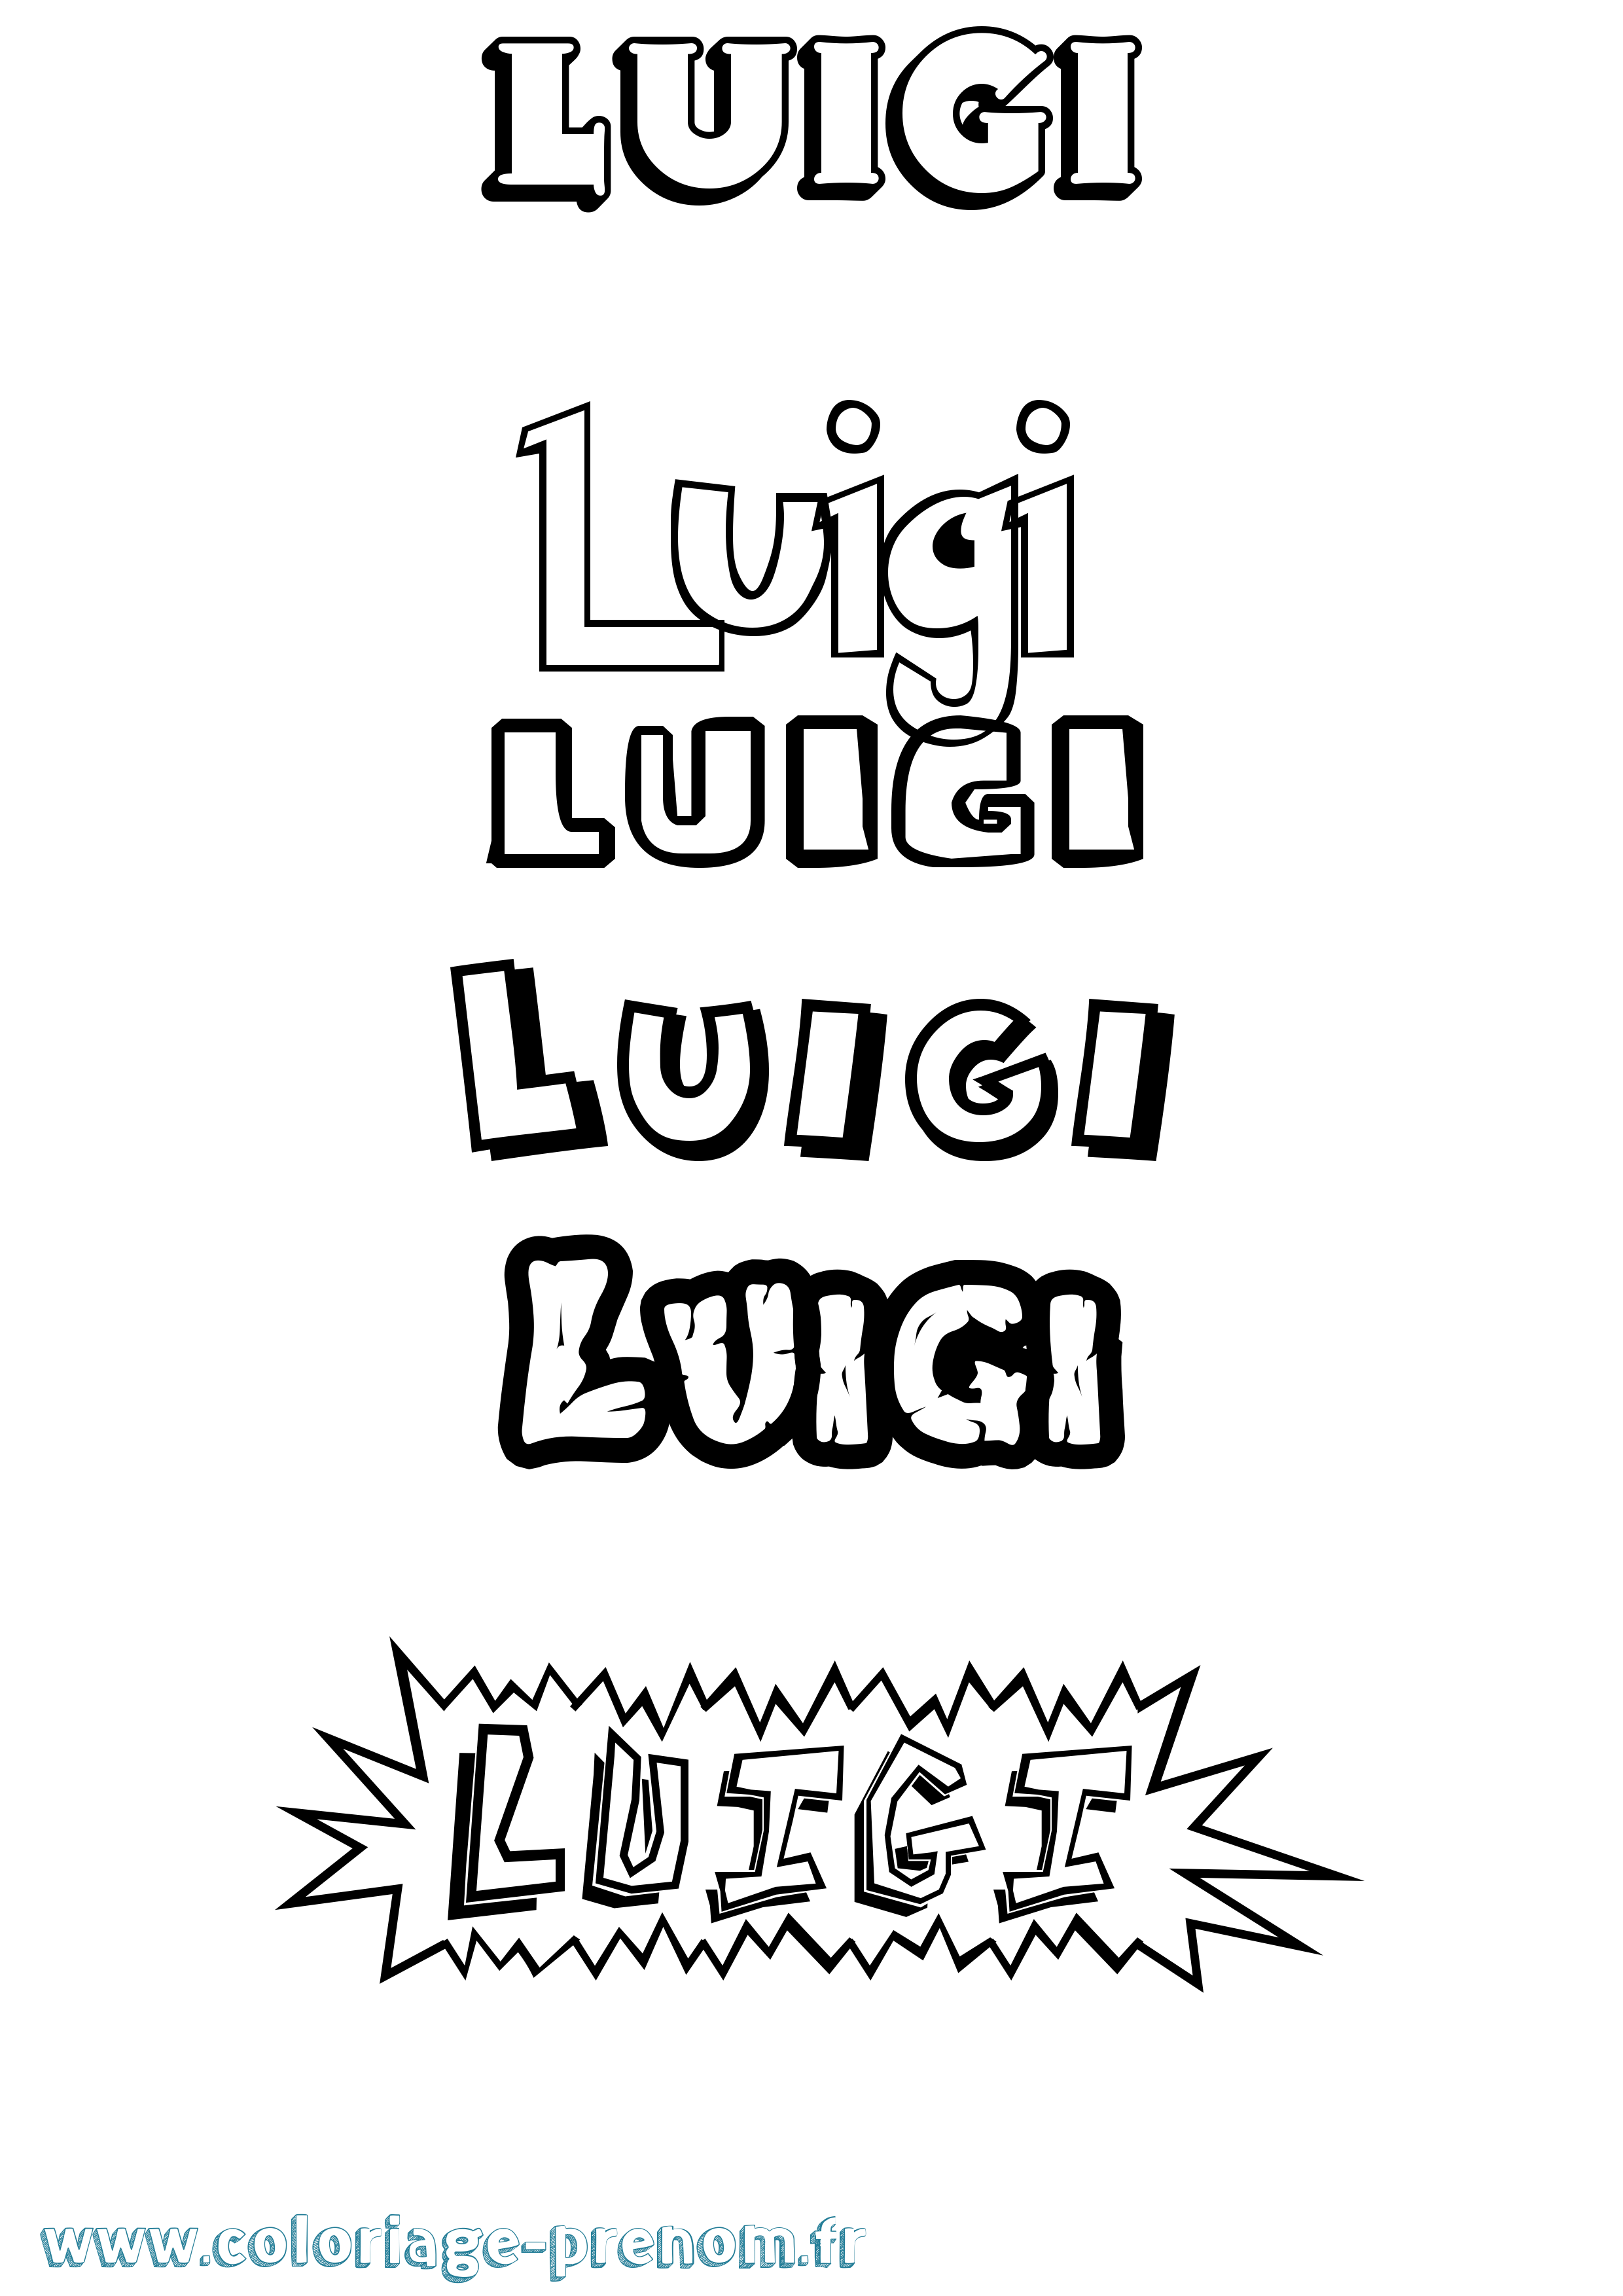 Coloriage prénom Luigi Dessin Animé